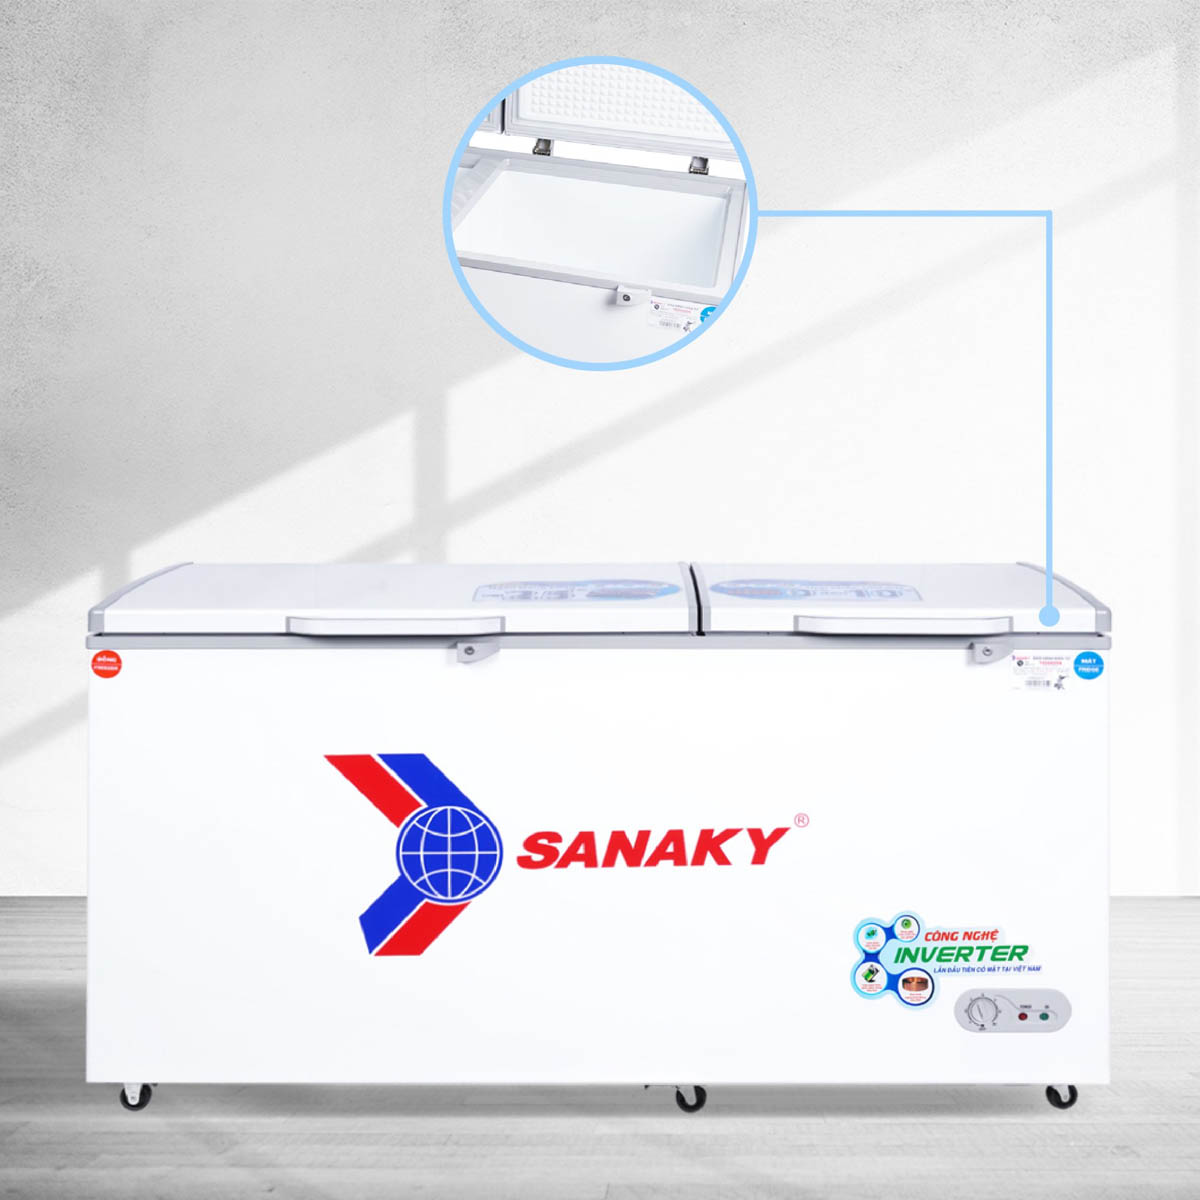 Tủ Đông Mát Sanaky Inverter VH-6699W3 có lòng côi tủ phẳng dễ vệ sinh